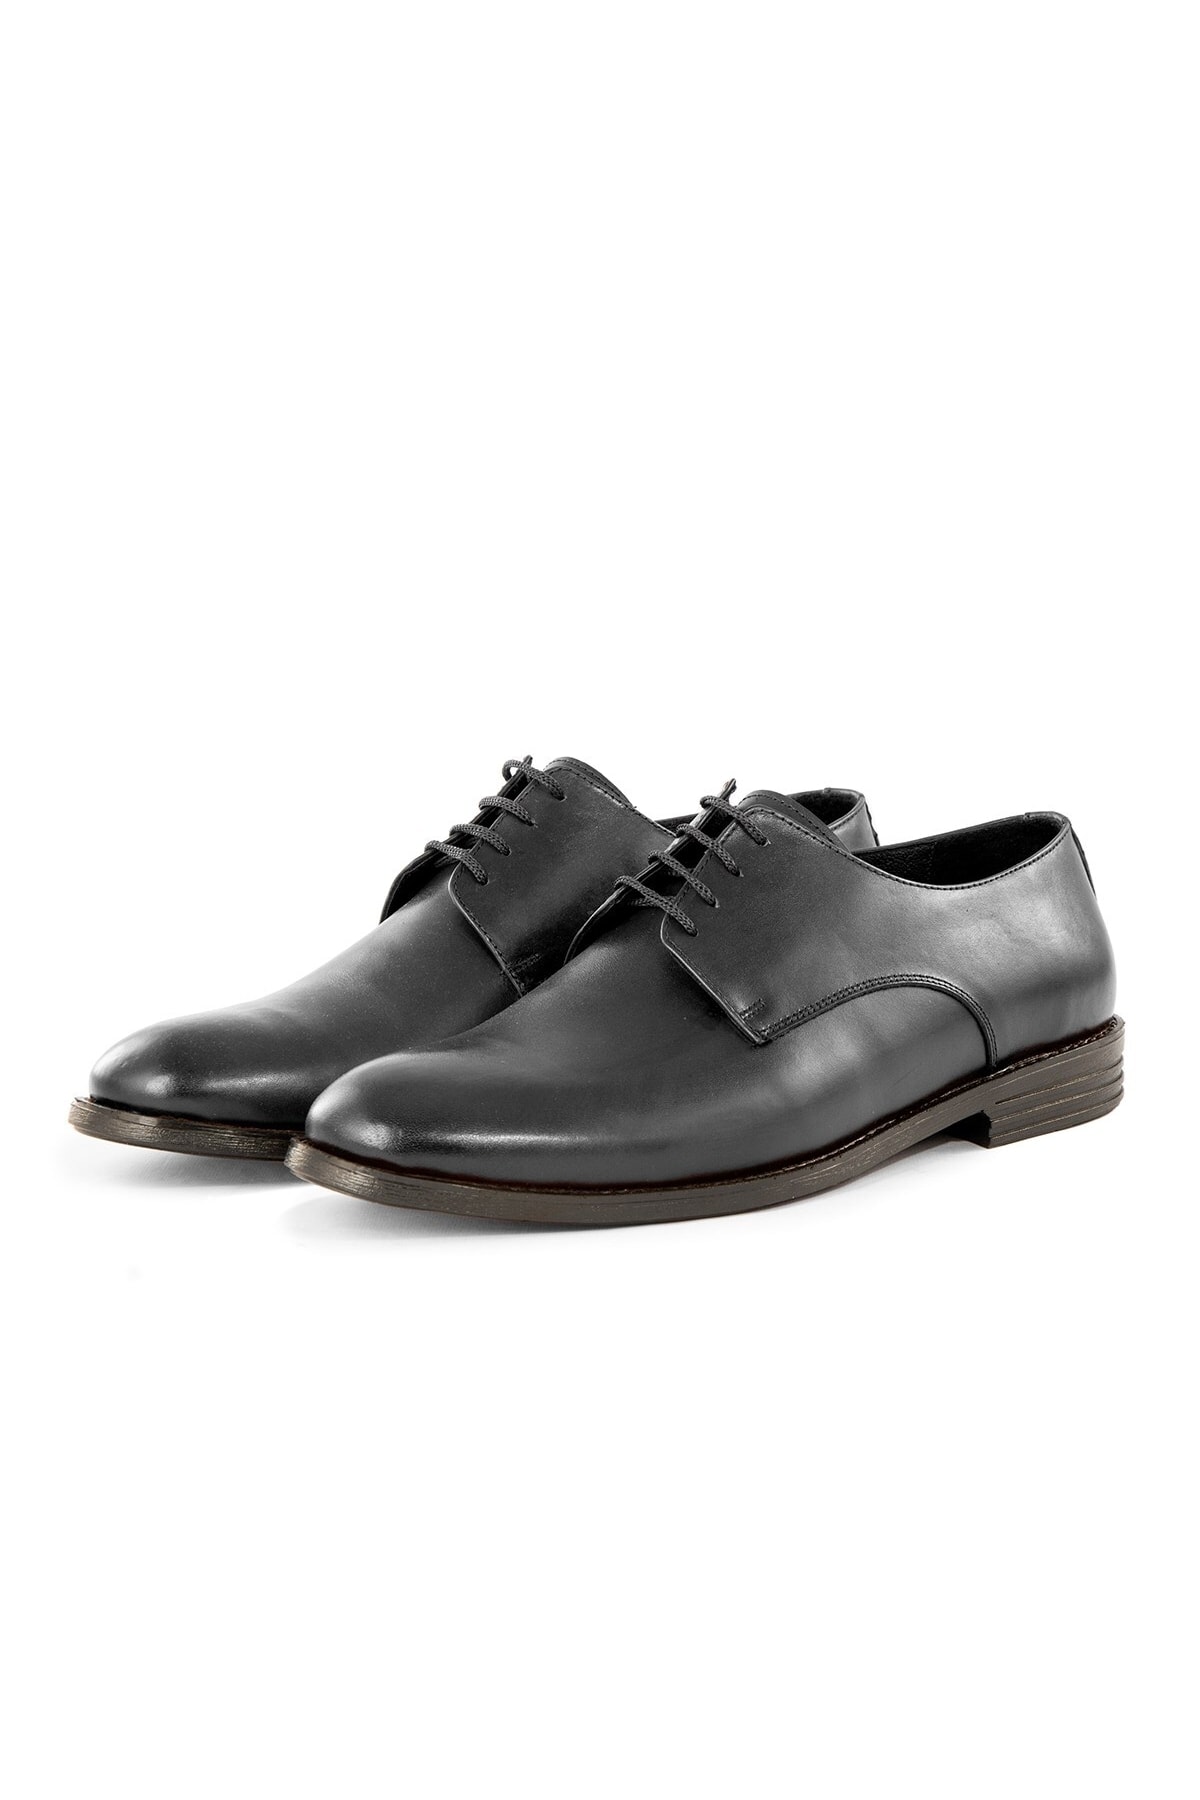 Levně Ducavelli Pierro Genuine Leather Men's Classic Shoes, Derby Classic Shoes, Lace-Up Classic Shoes.